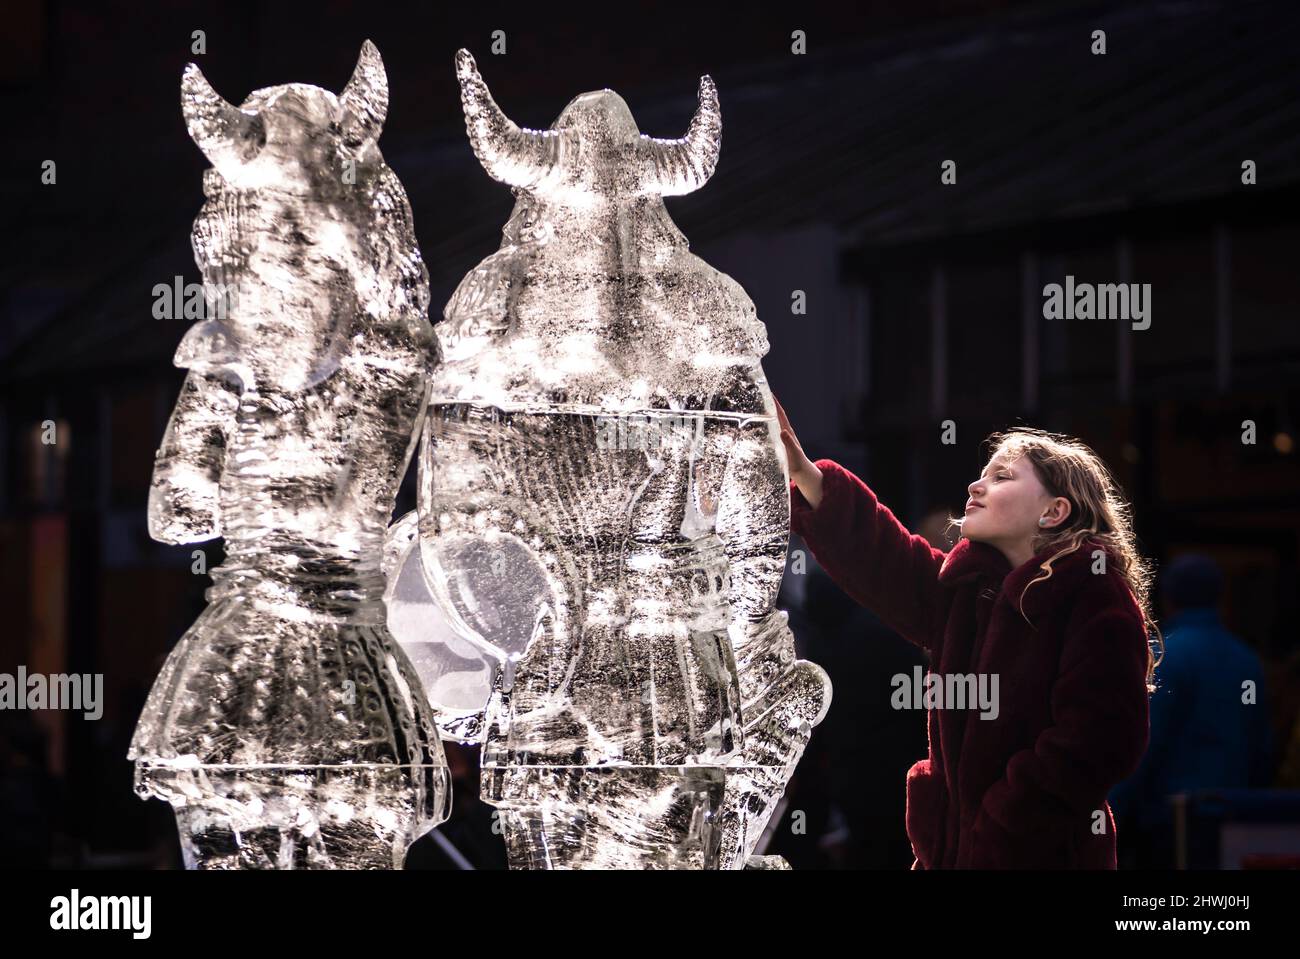 Bella Richardson, 7 ans, voit une sculpture sur glace de deux Vikings qui fait partie de la piste de glace de York dans le centre-ville de York, qui comprend plus de 40 sculptures de glace solide. Date de la photo: Dimanche 6 mars 2022. Banque D'Images